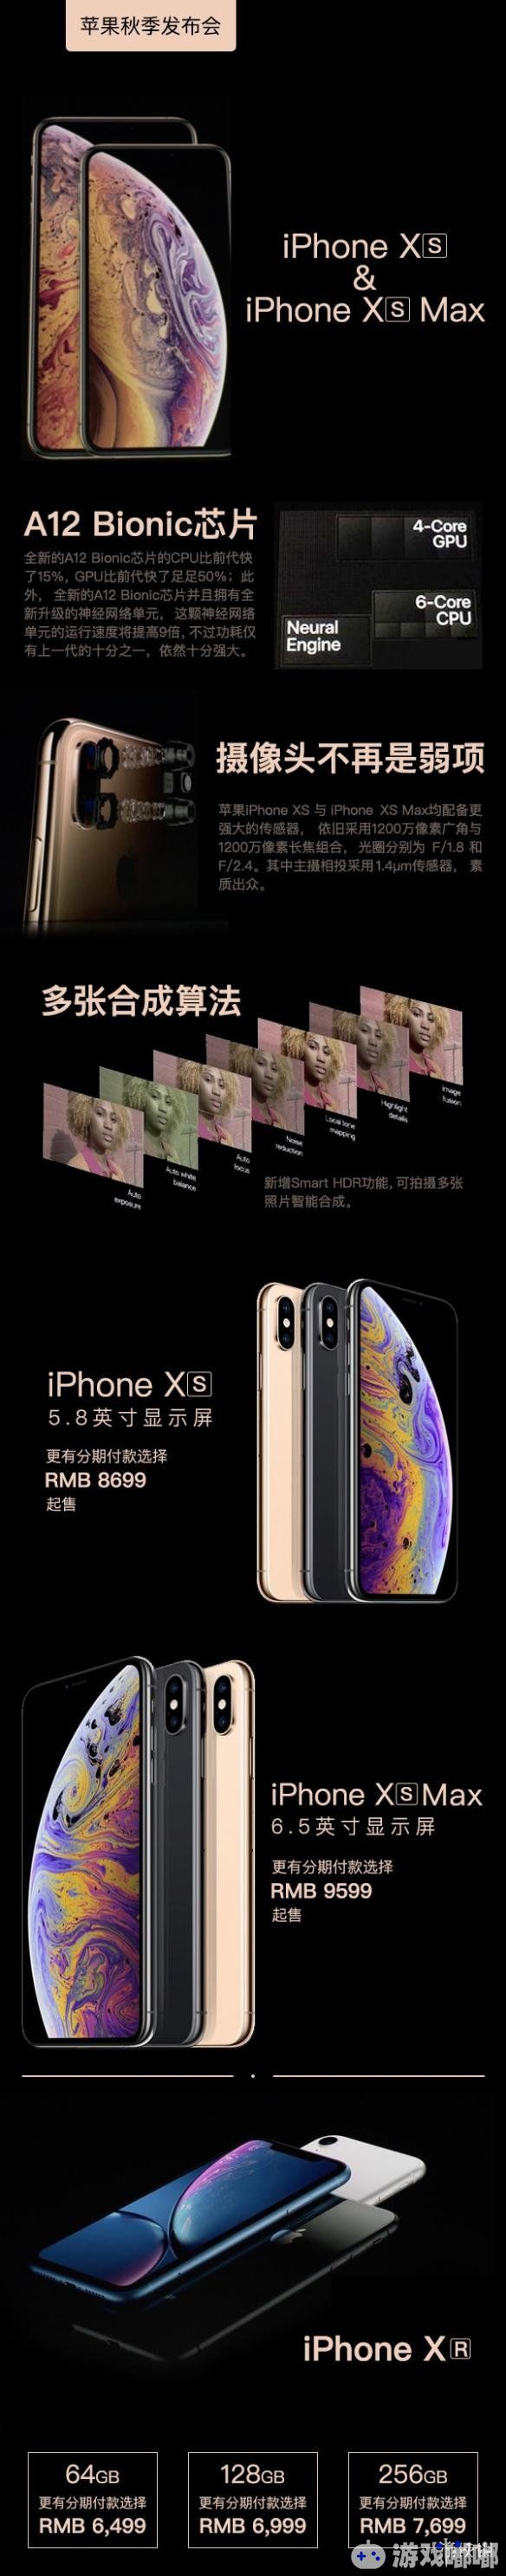 2018苹果秋季发布会,iPhoneXRXsMax对比分析